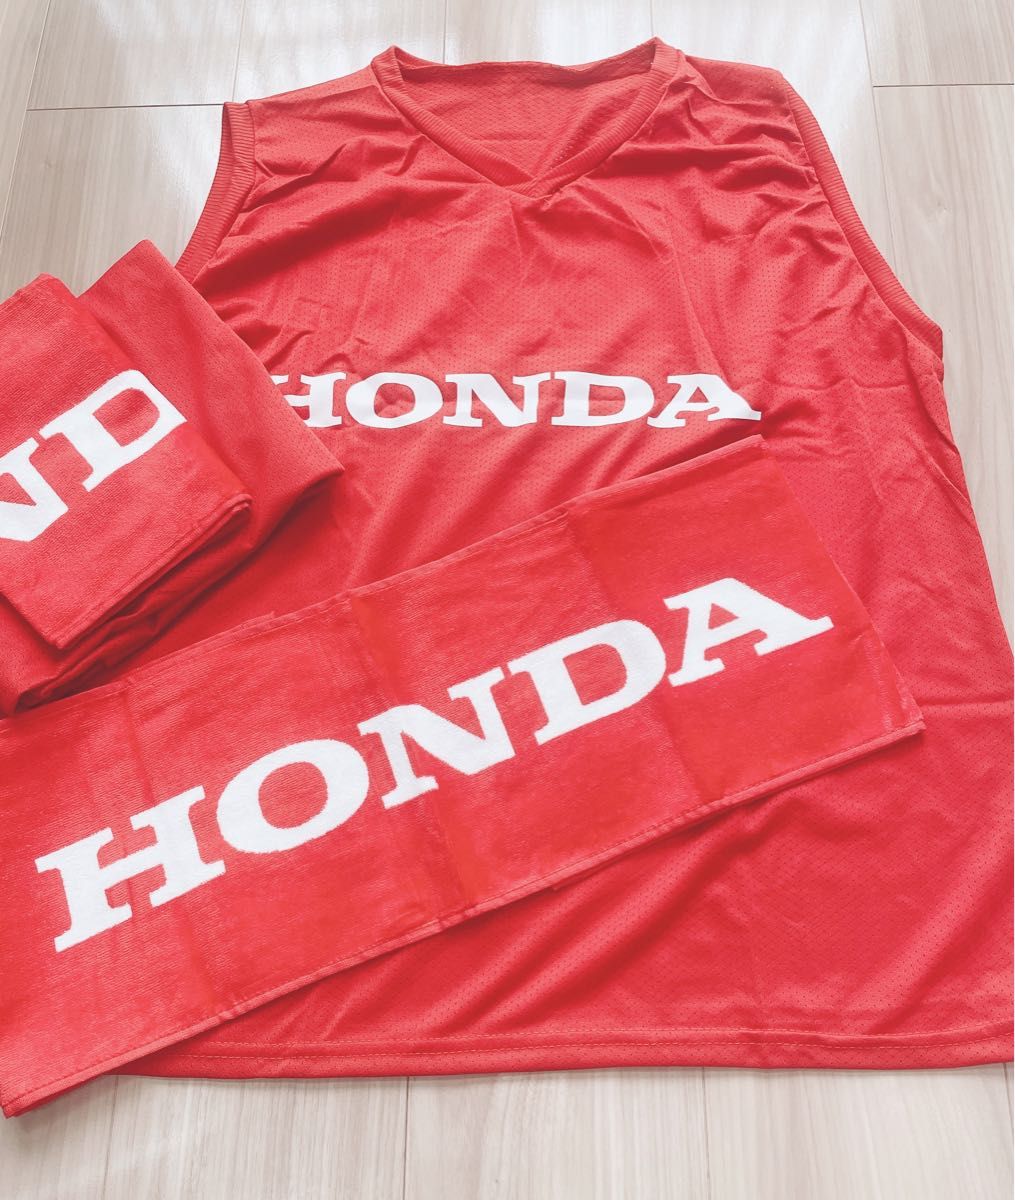 Honda熊本 応援ビブス タオルマフラー